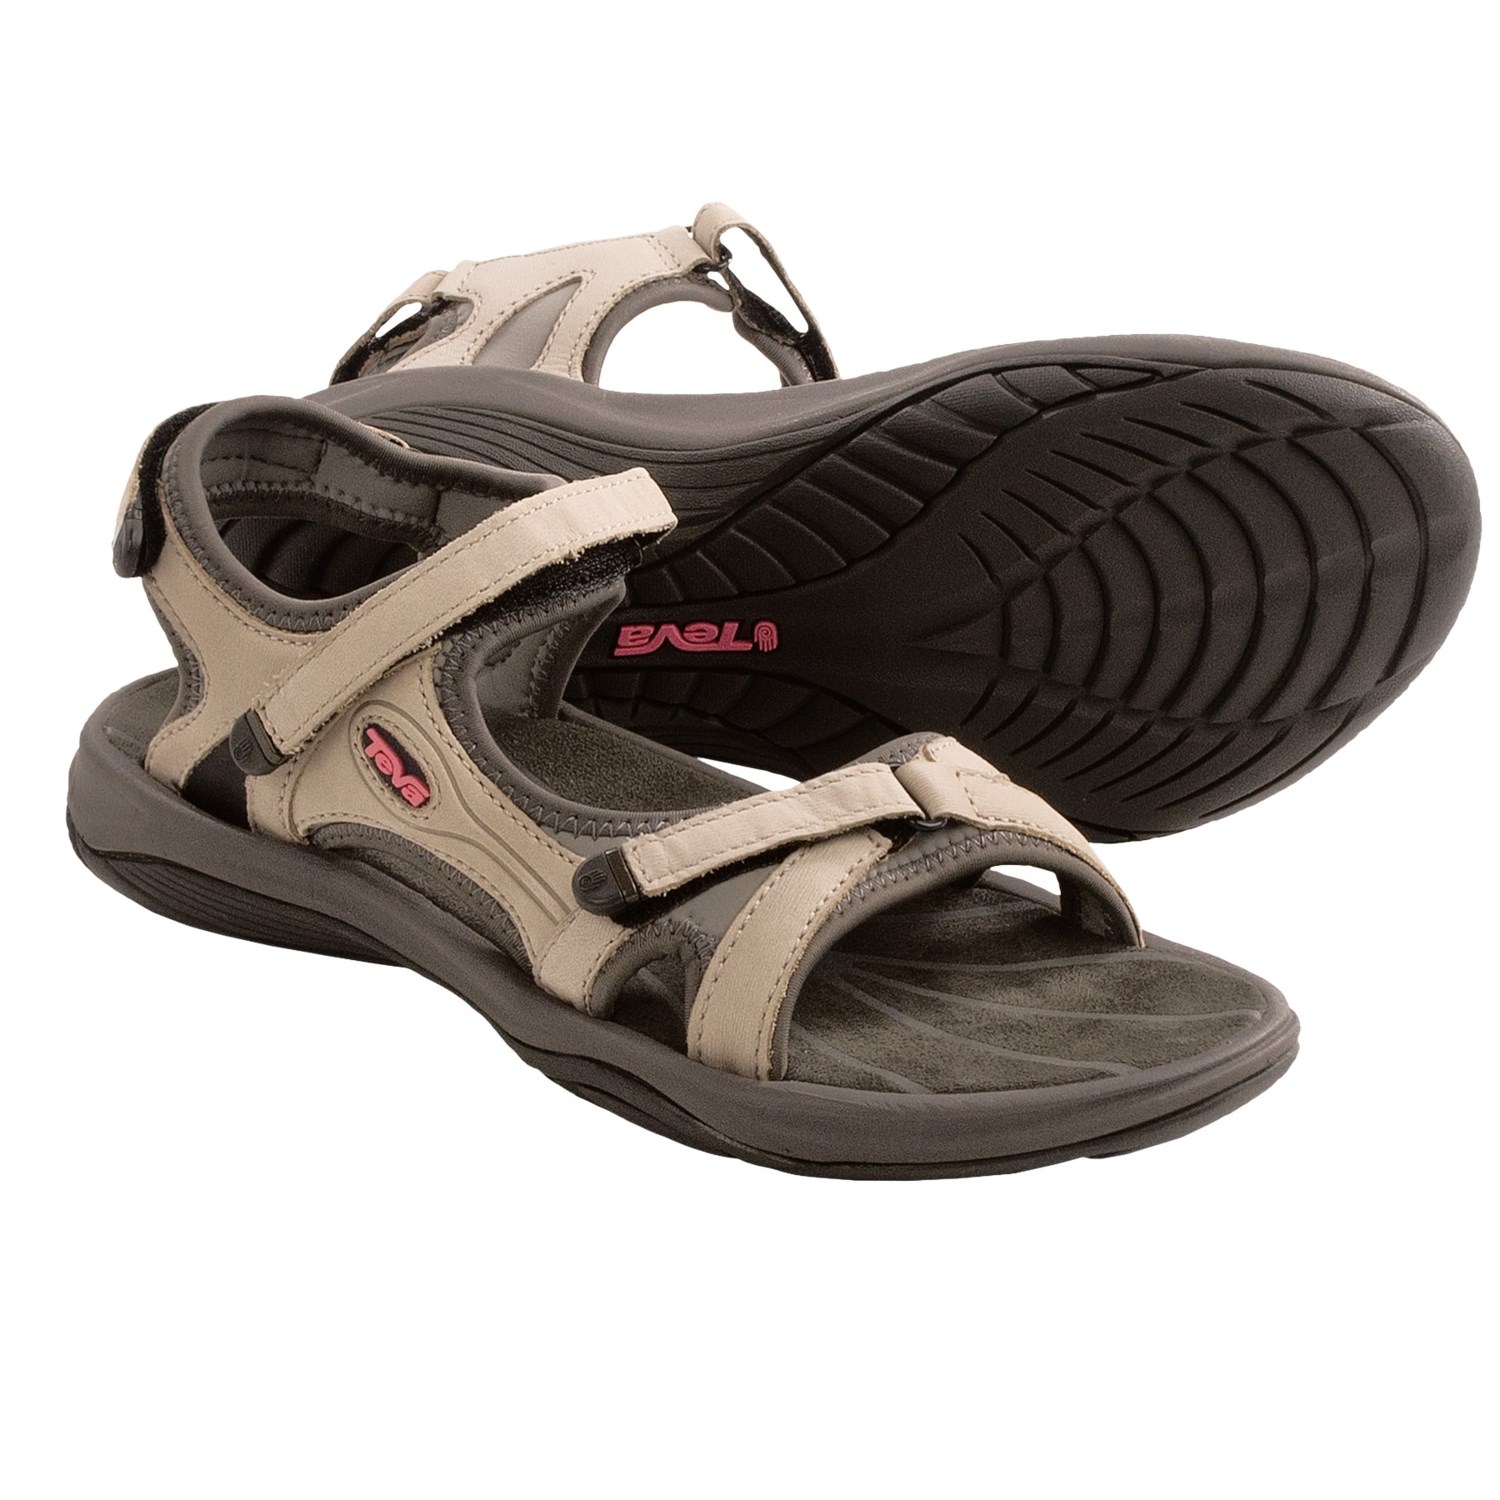 Teva Neota Sport Sandals (For Women) in Silver Cloud